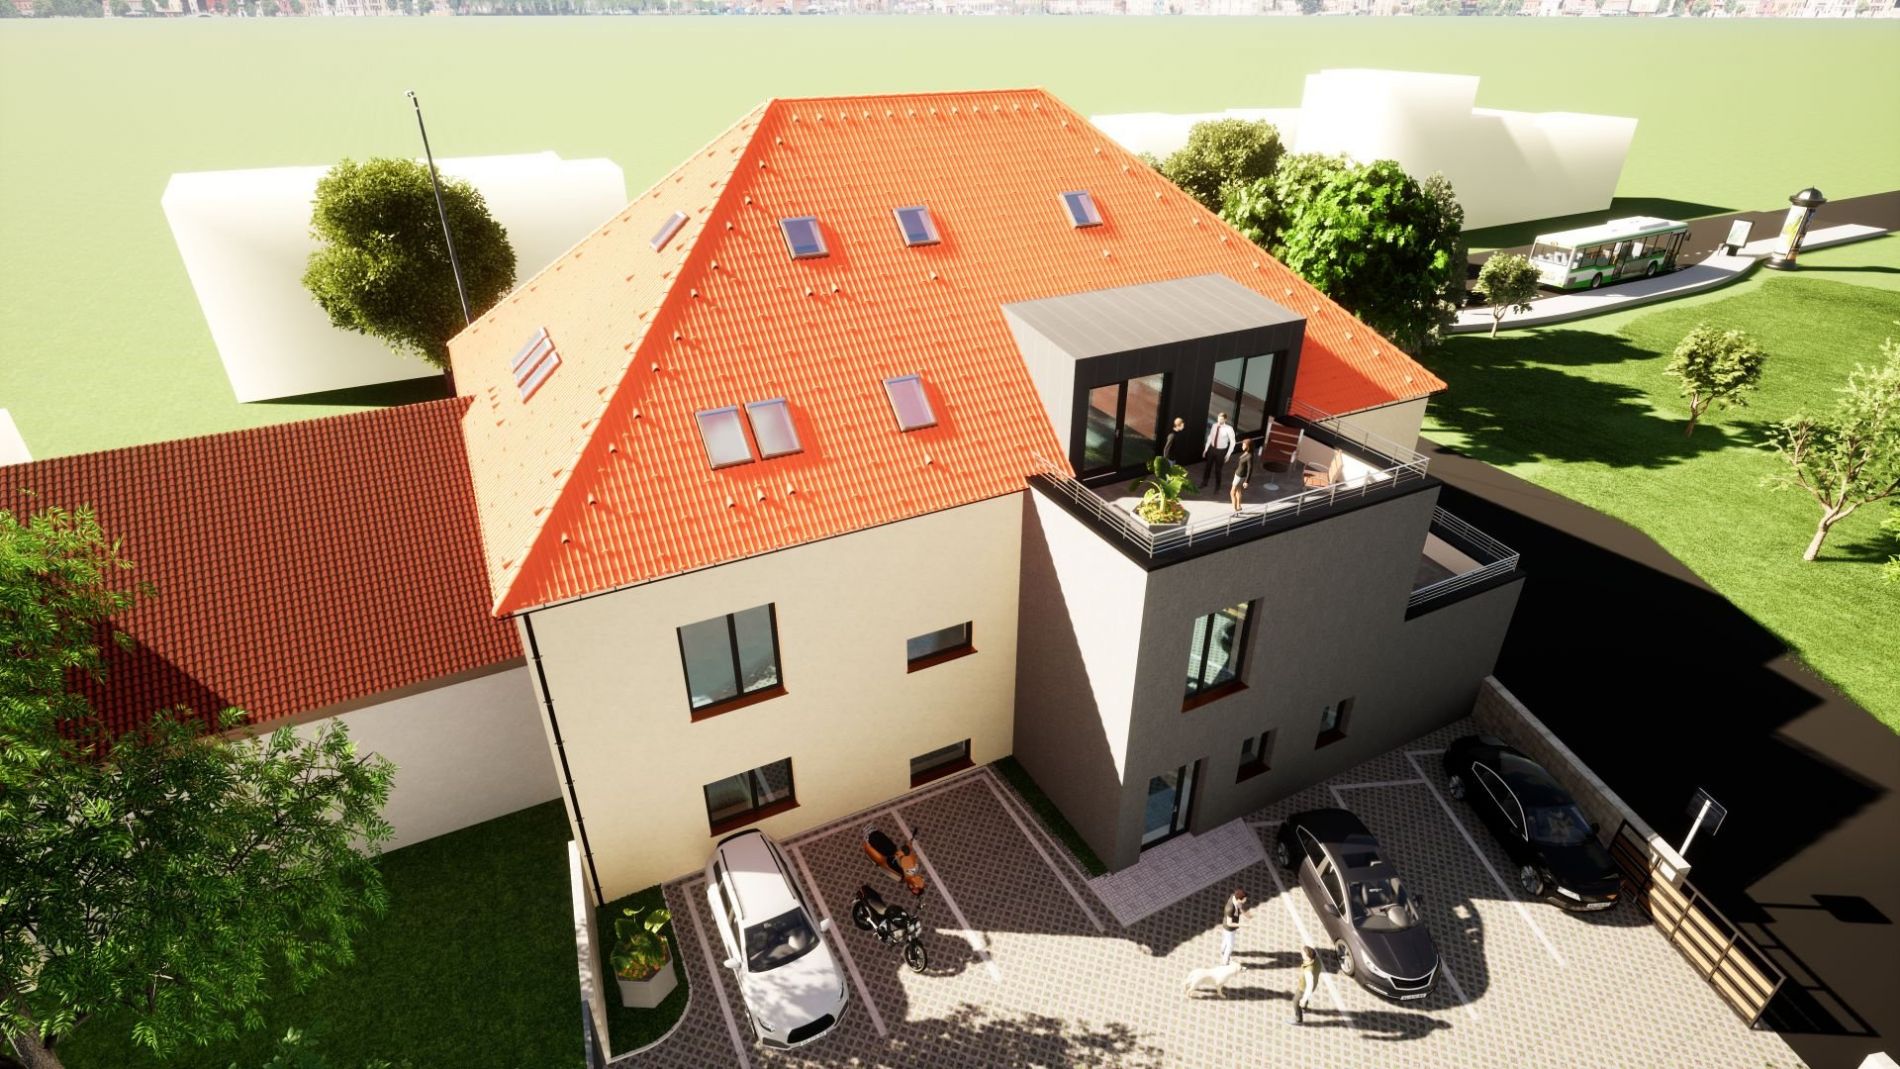 Prodej nemovitosti a developerského projektu výstavby bytového domu v Rokycanech - Borek., obrázek č. 3